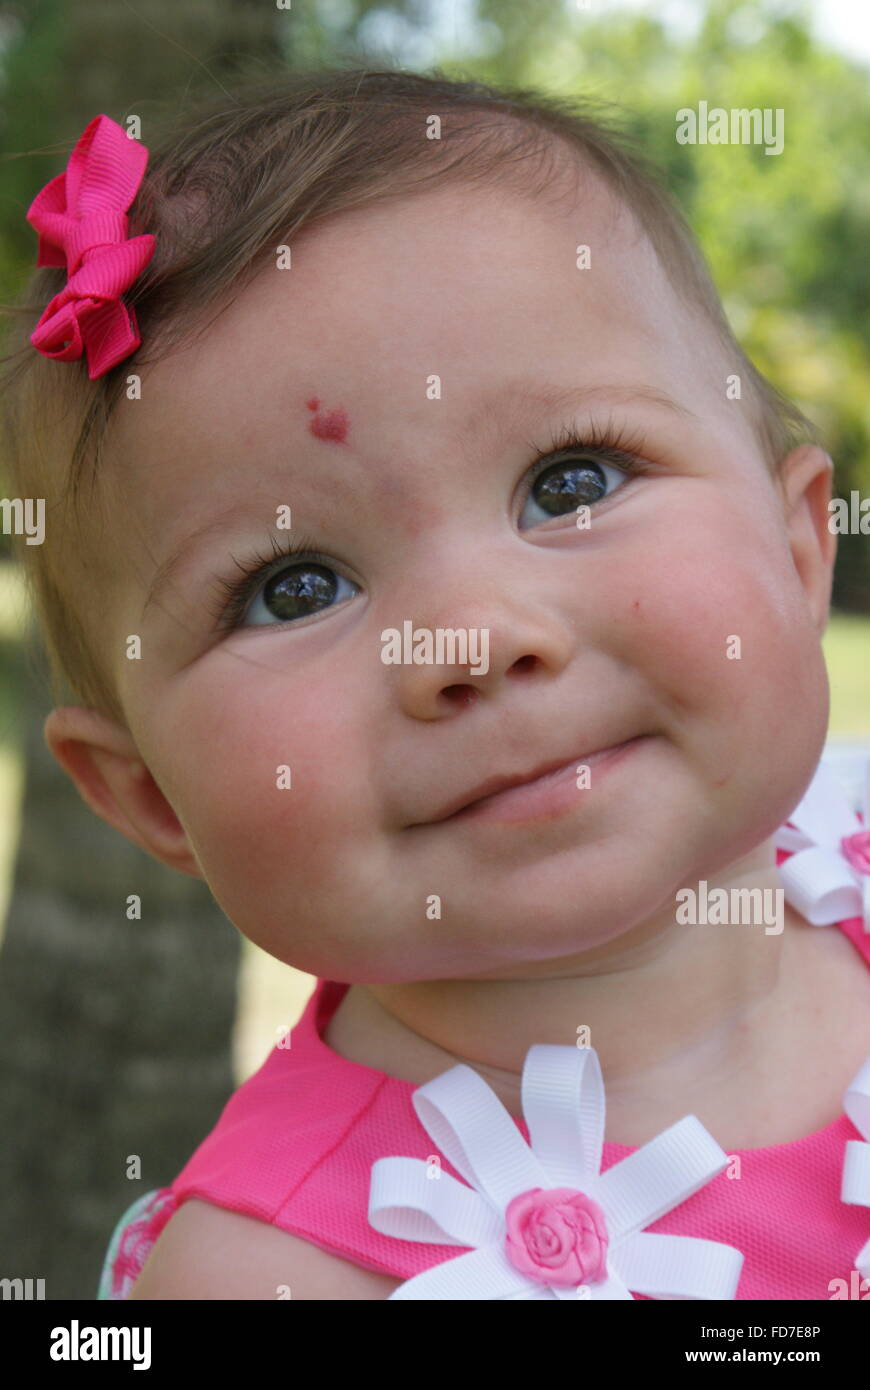 Schönes kleines Baby Mädchen alle verkleidet für Ostersonntag. Sie hat eine  schöne herzförmige Muttermal auf der Stirn Stockfotografie - Alamy